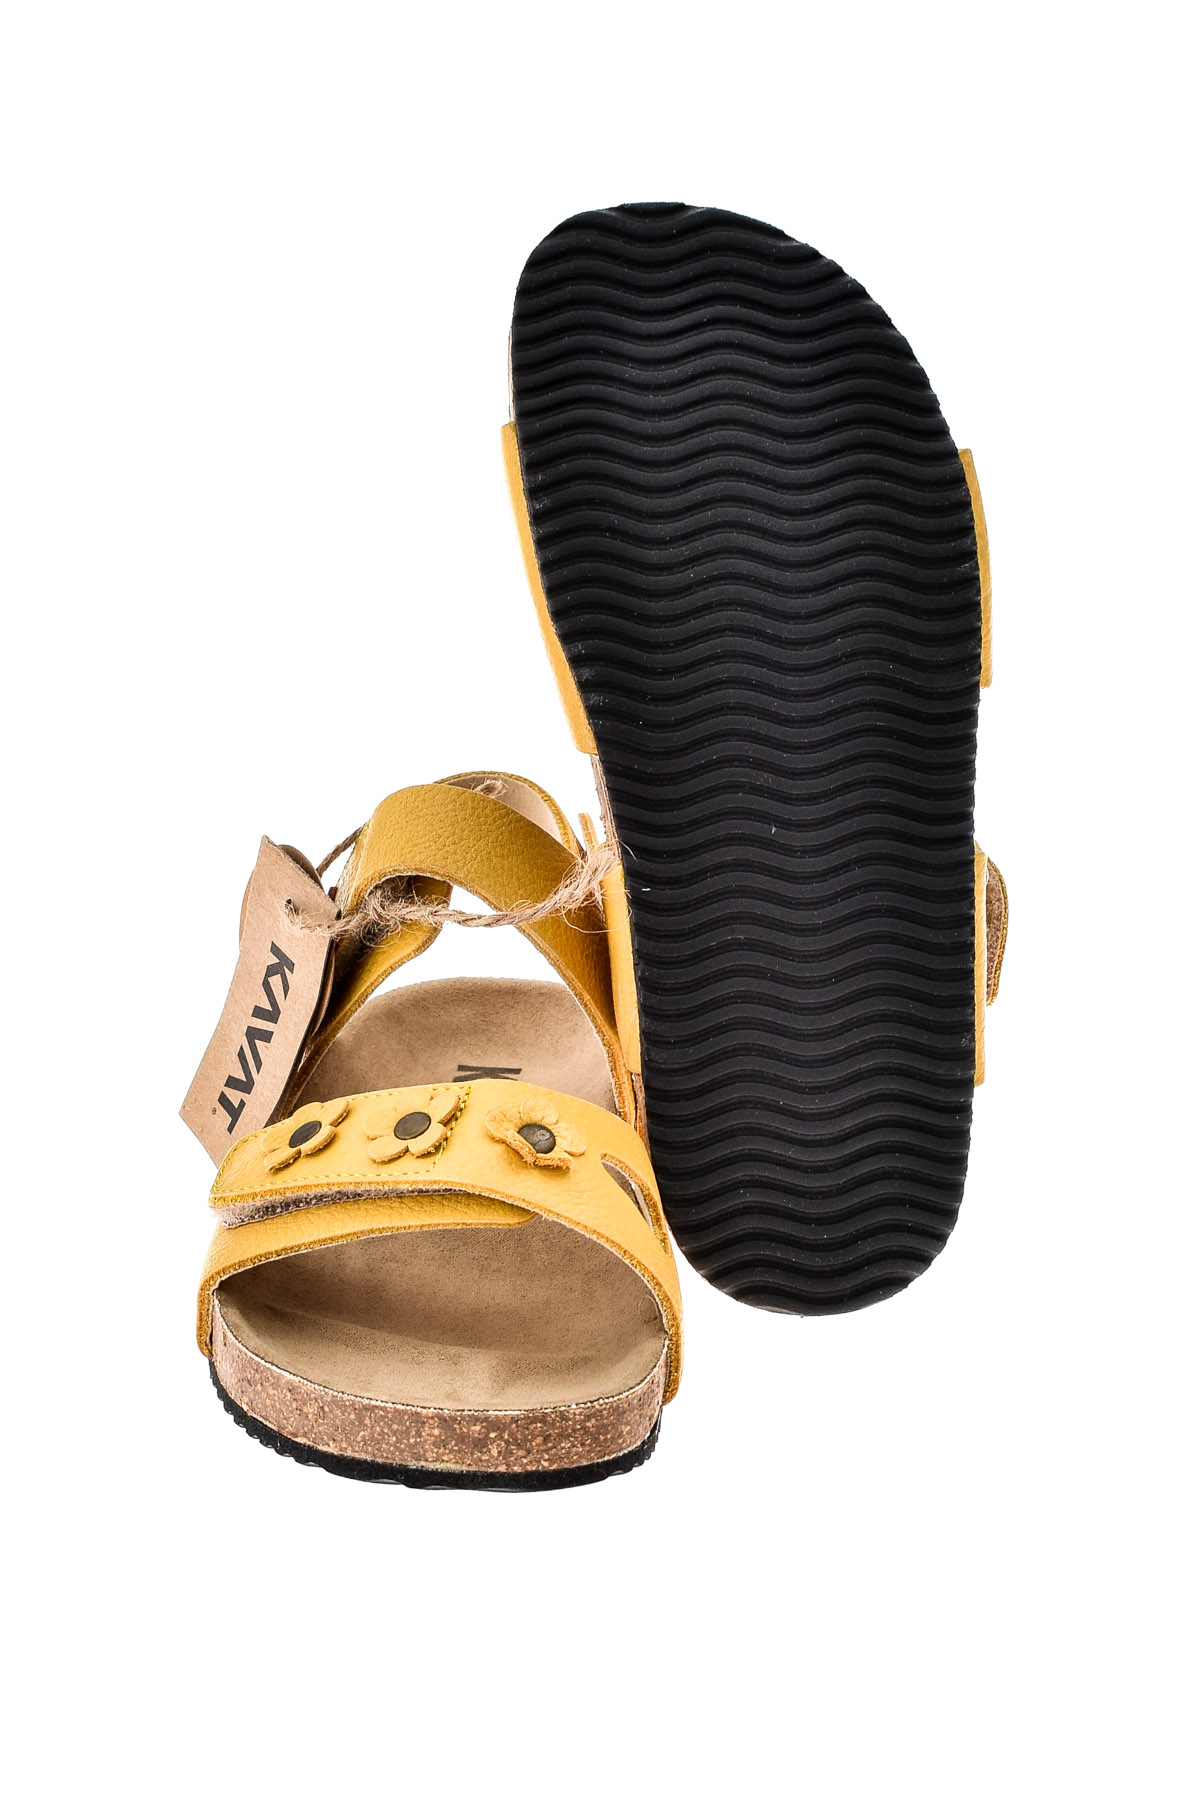 Sandale pentru fete - KAVAT - 3